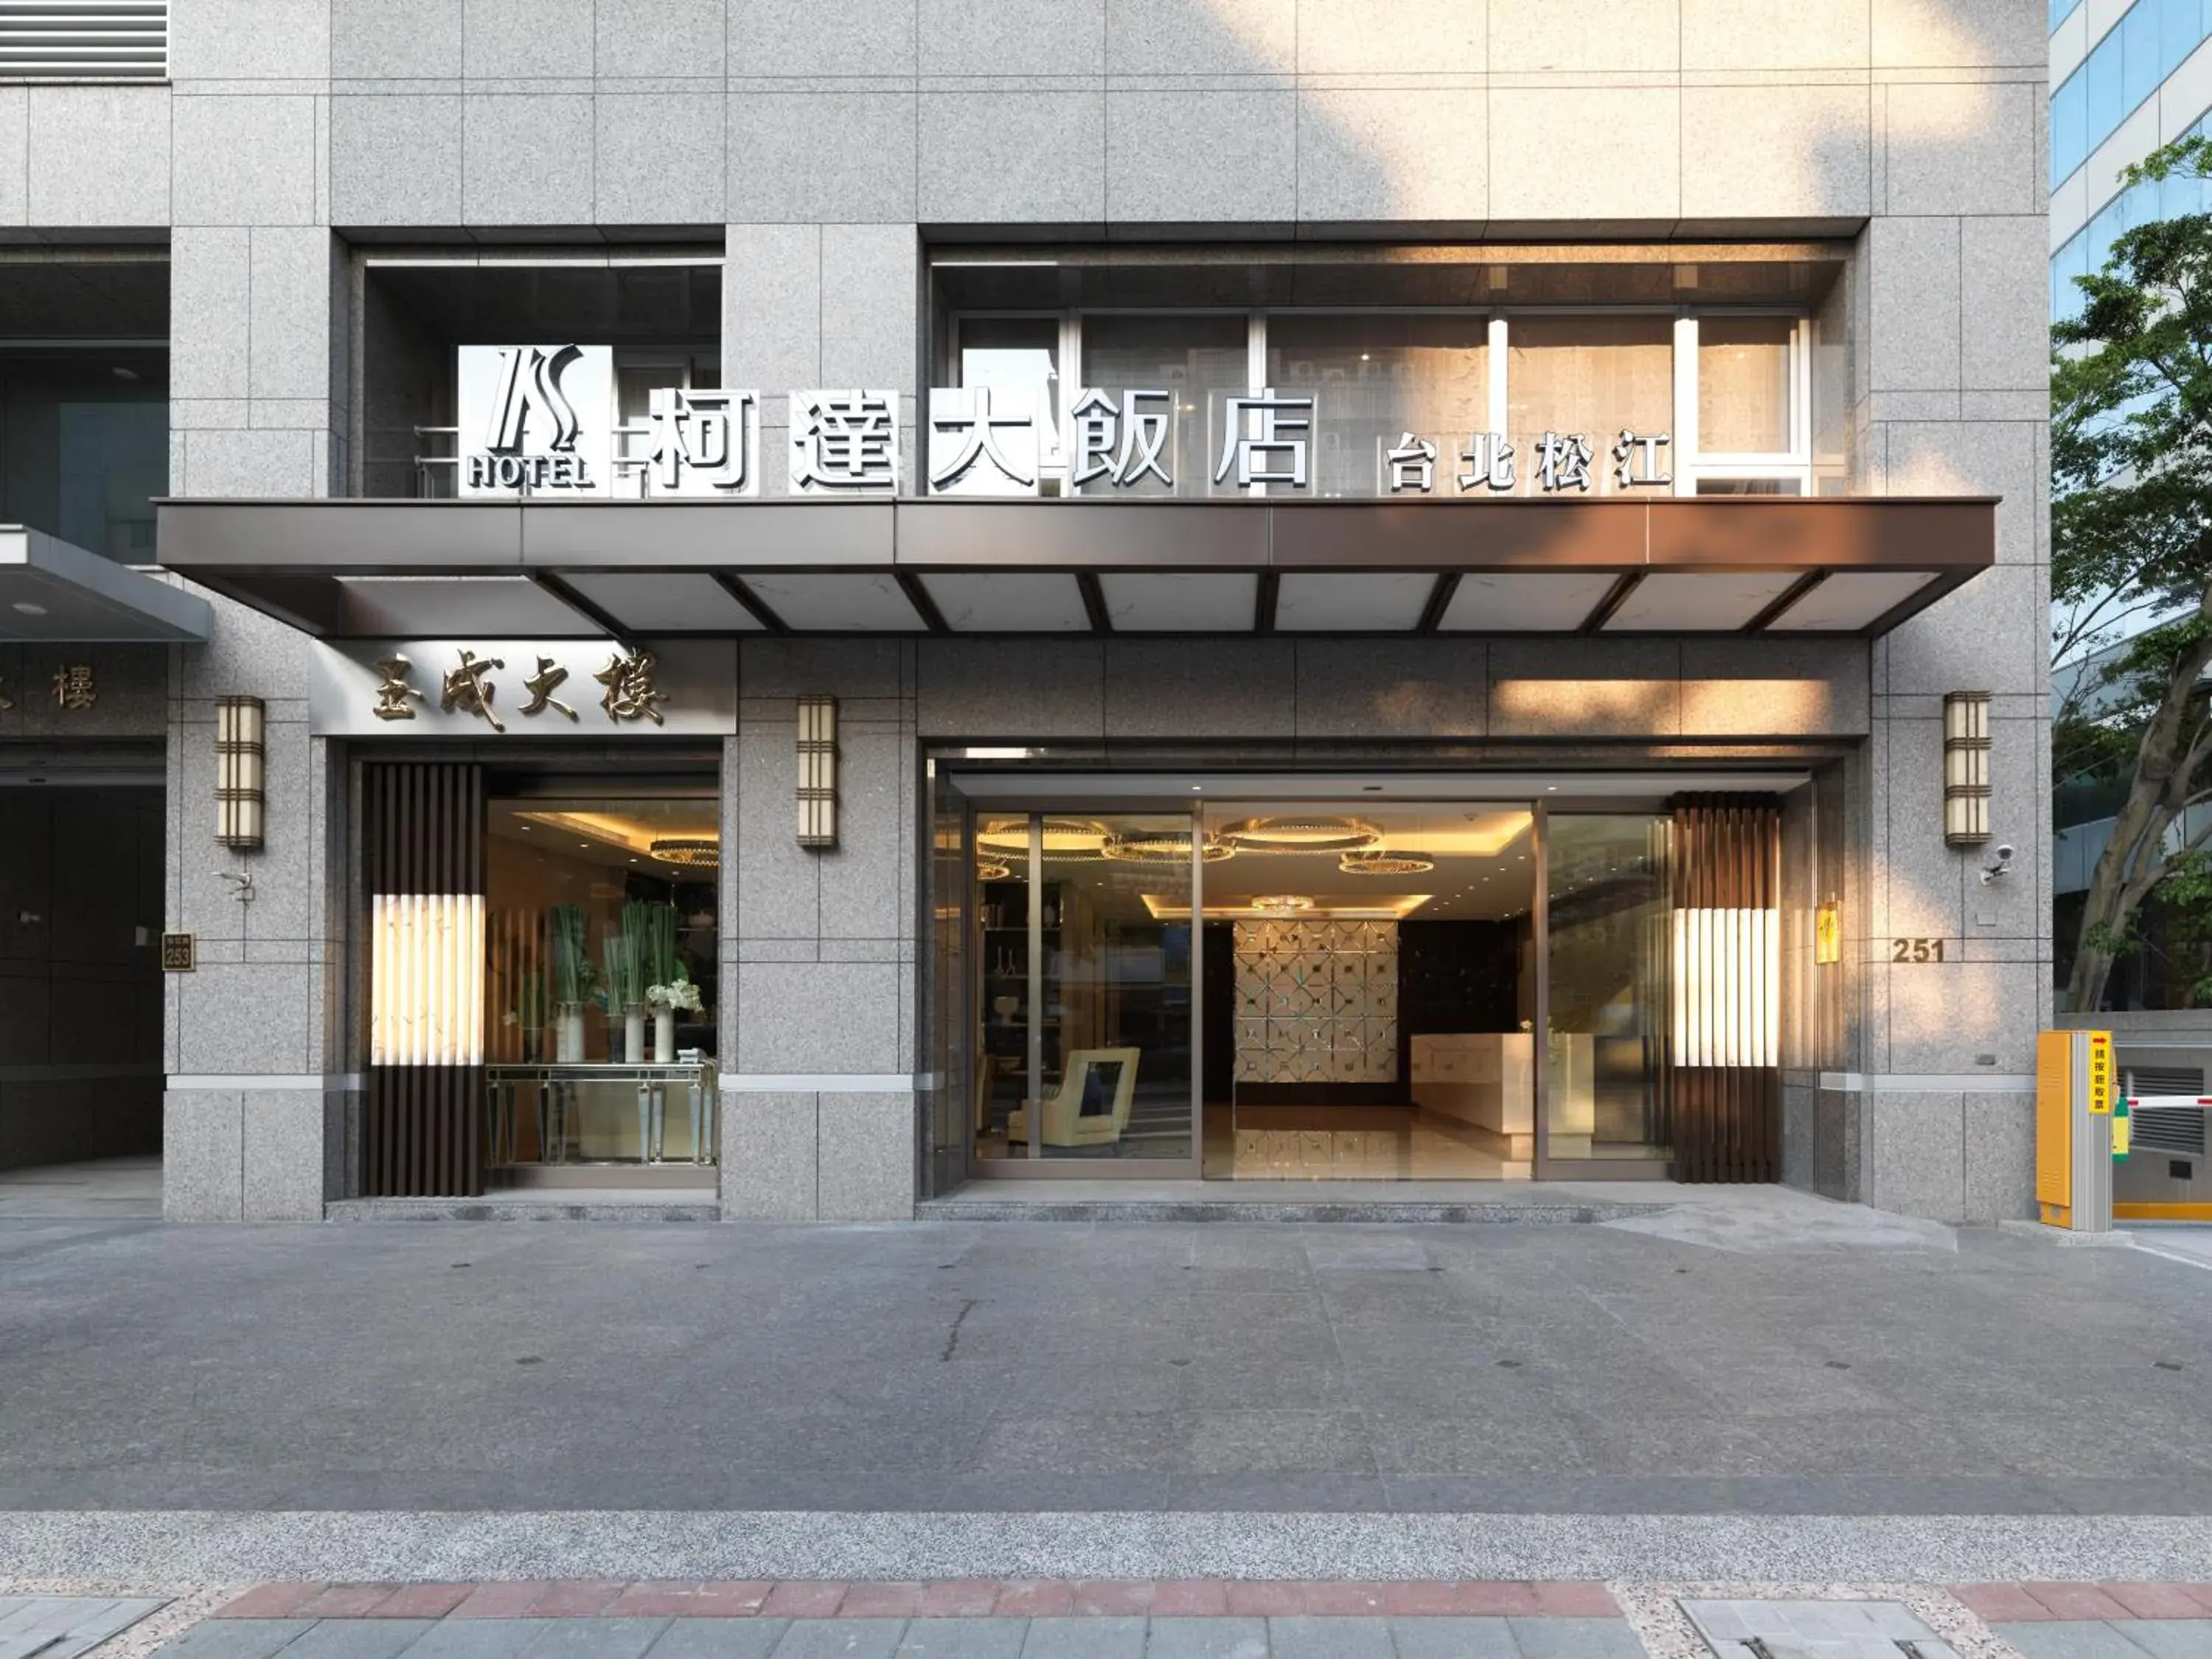 Facade/entrance in K Hotel Taipei Songjiang